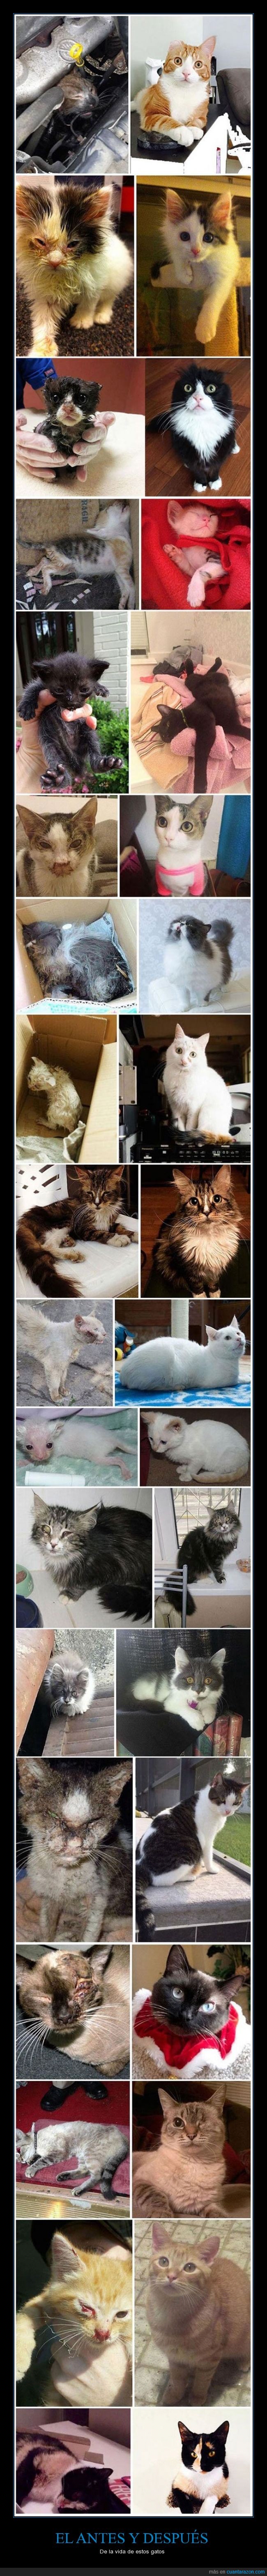 gato,salvar,rescatar,oreja,adoptar,adopción